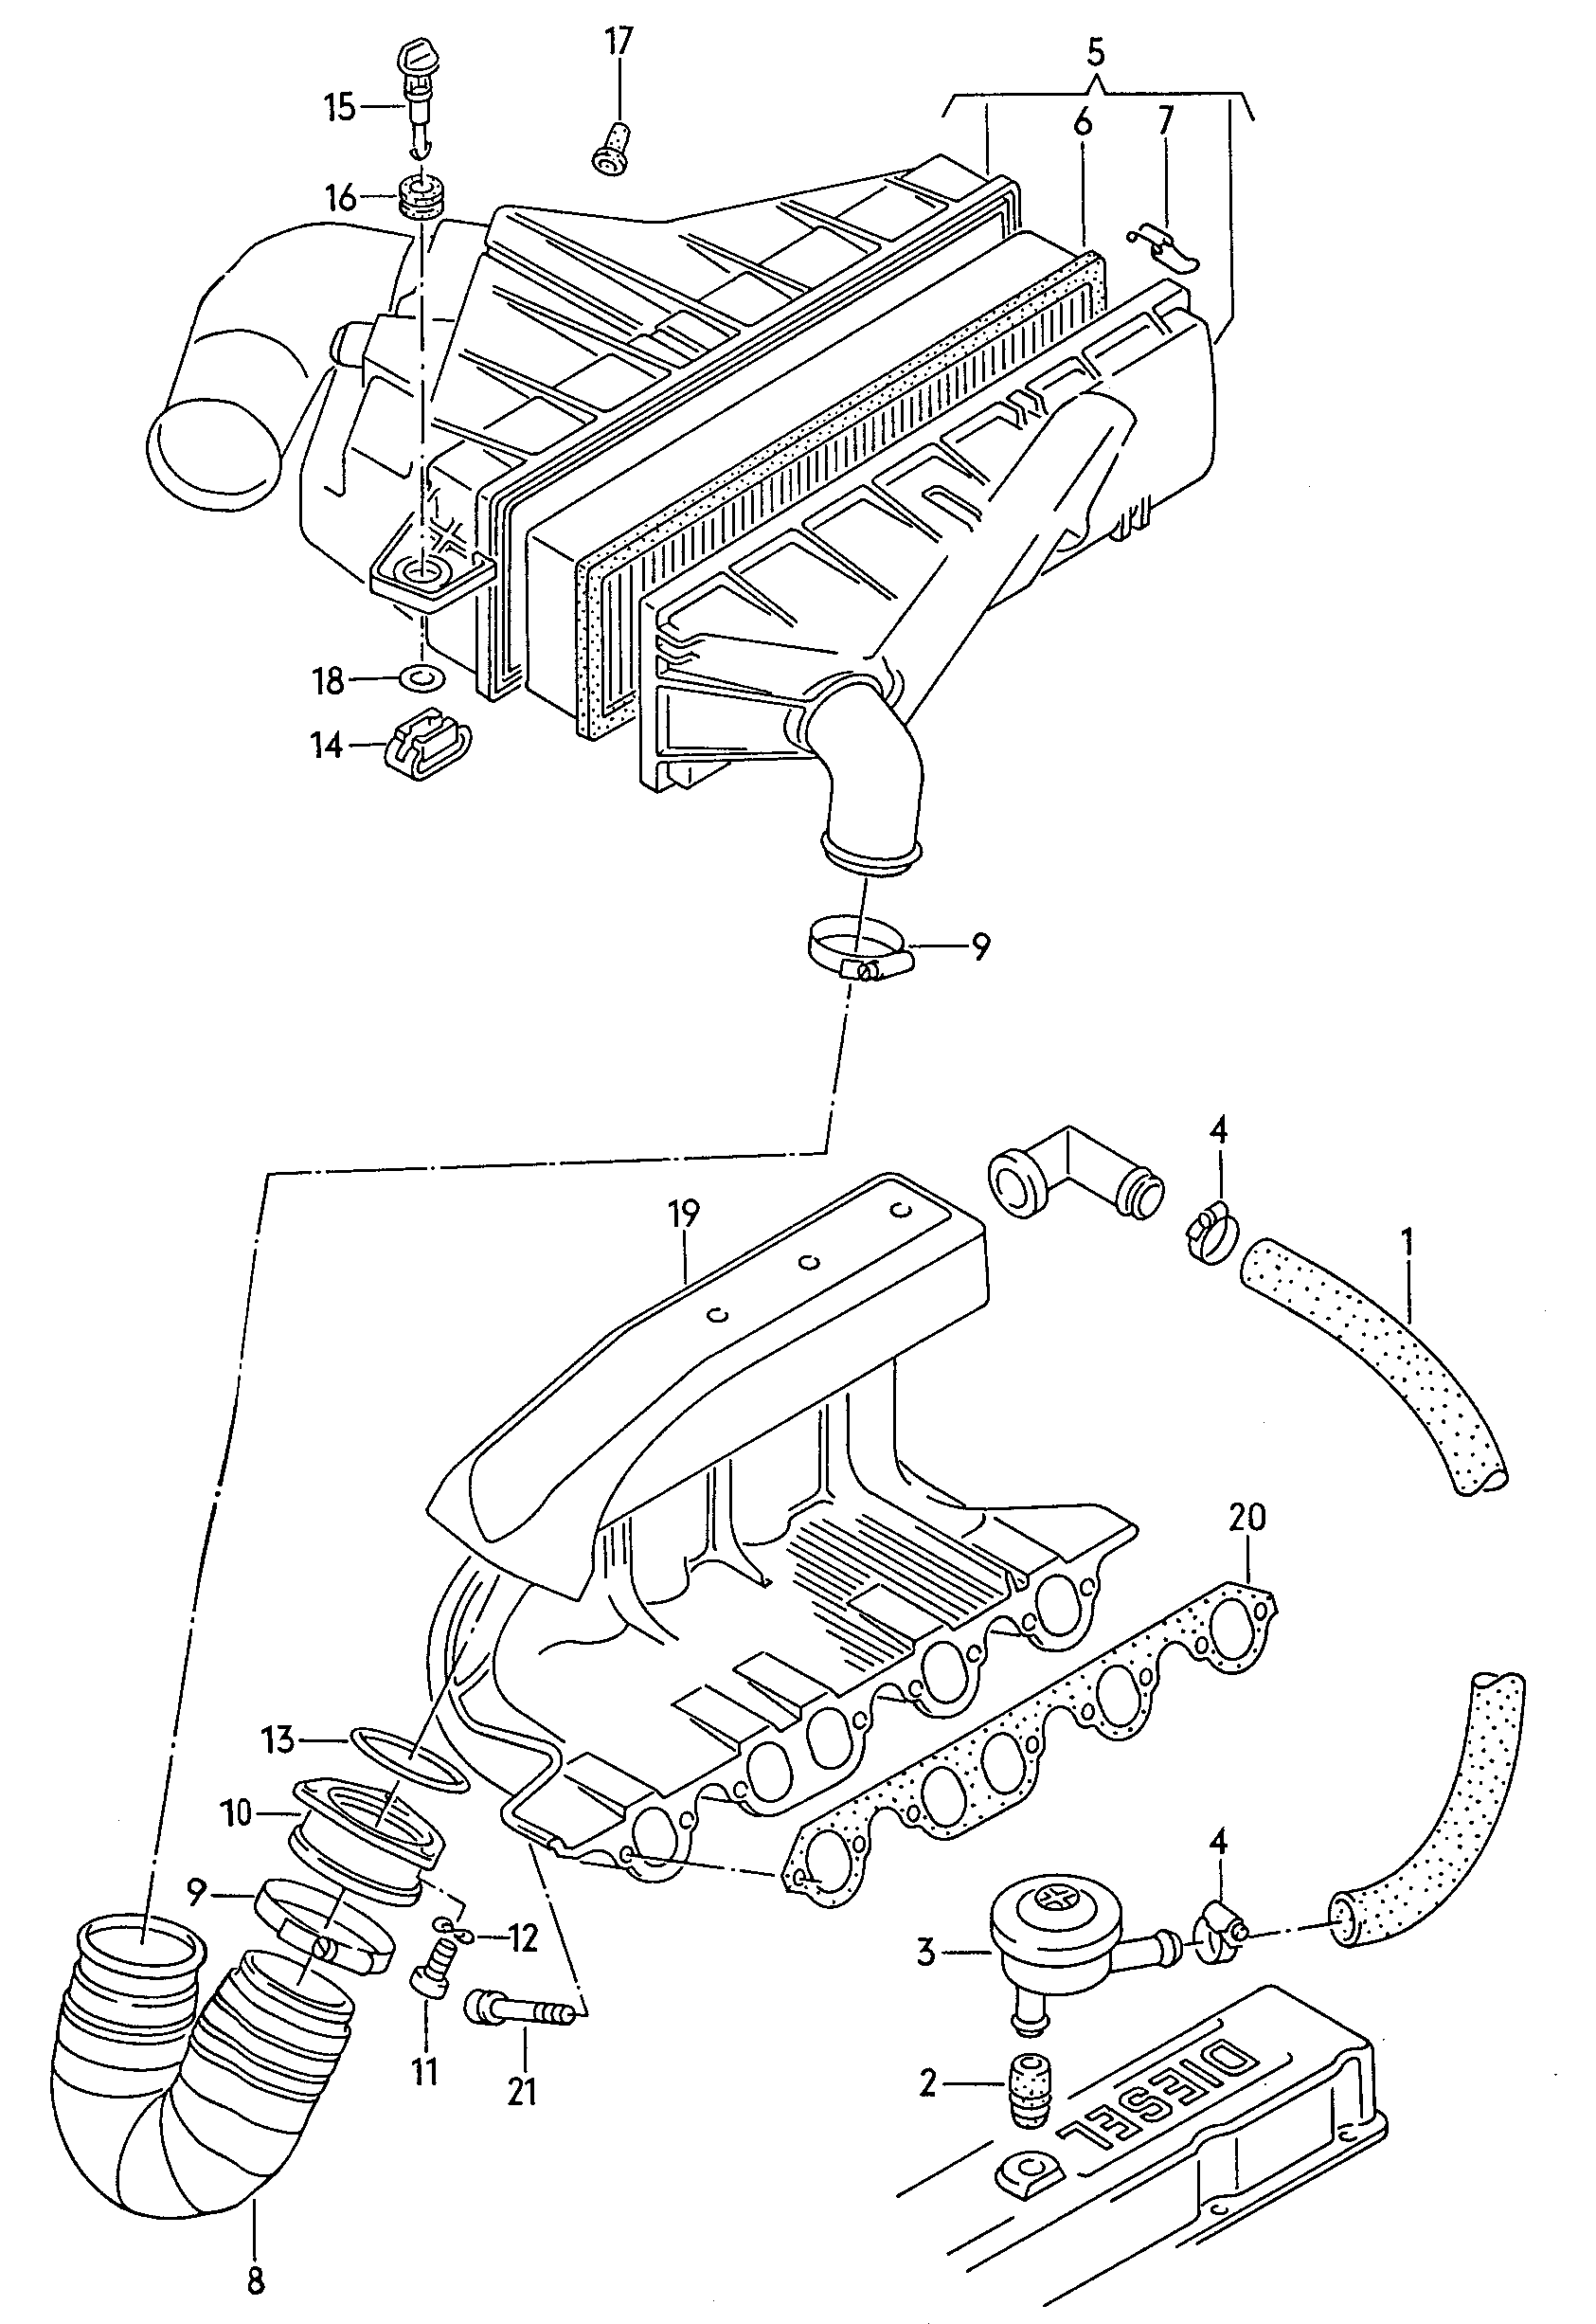 filtro de airevalvula reguladora de presionBoca de aspiracion 2,4l - Audi 100/Avant - a100